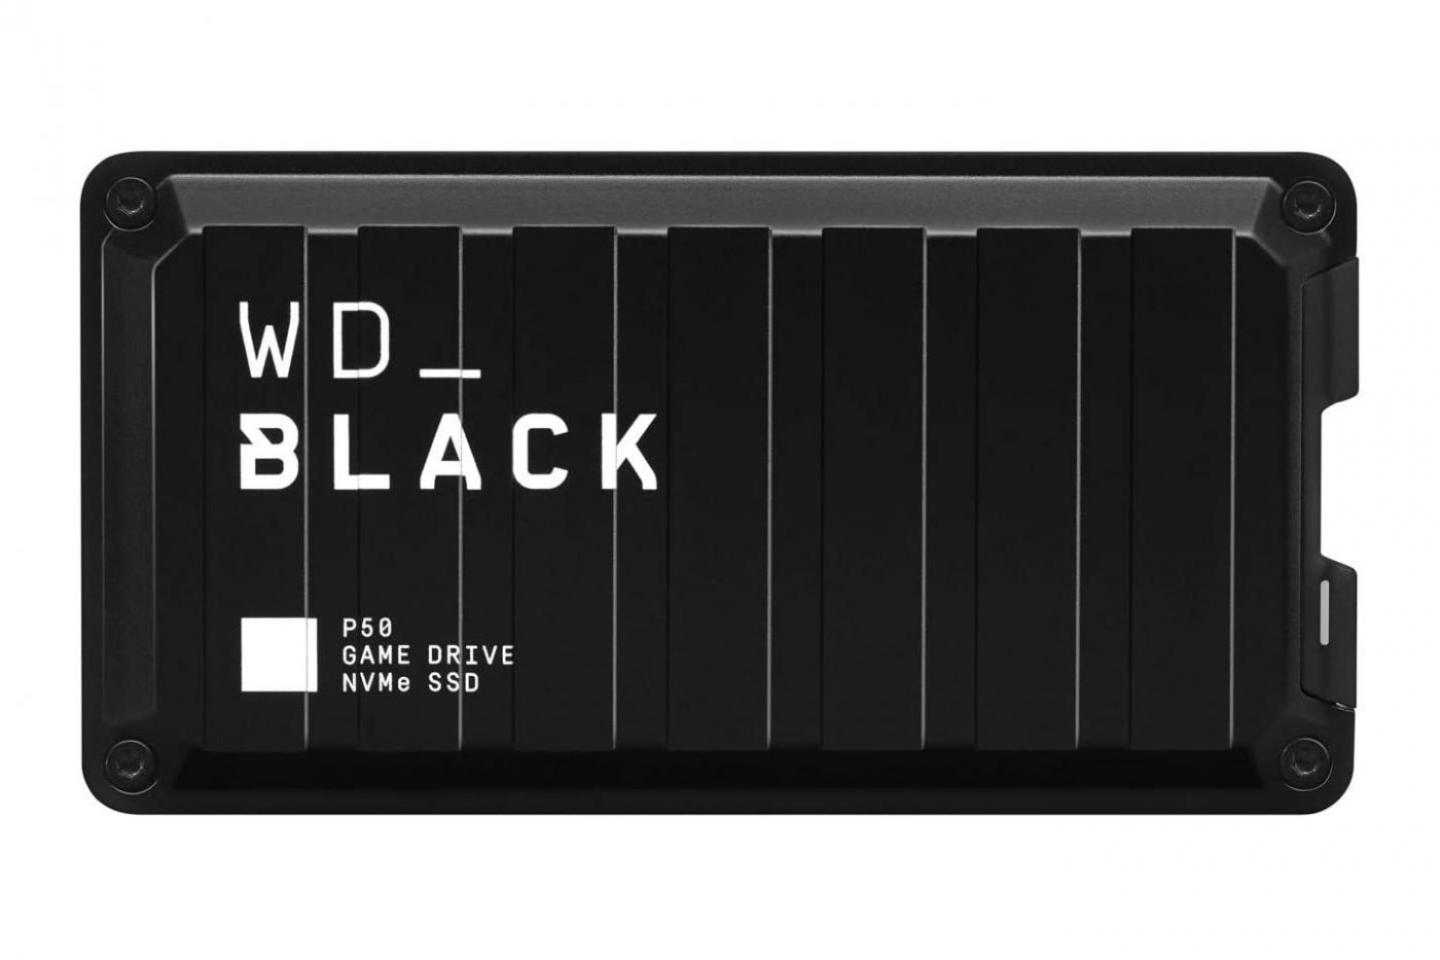 4.0TB SSD(WD BLACK P50)